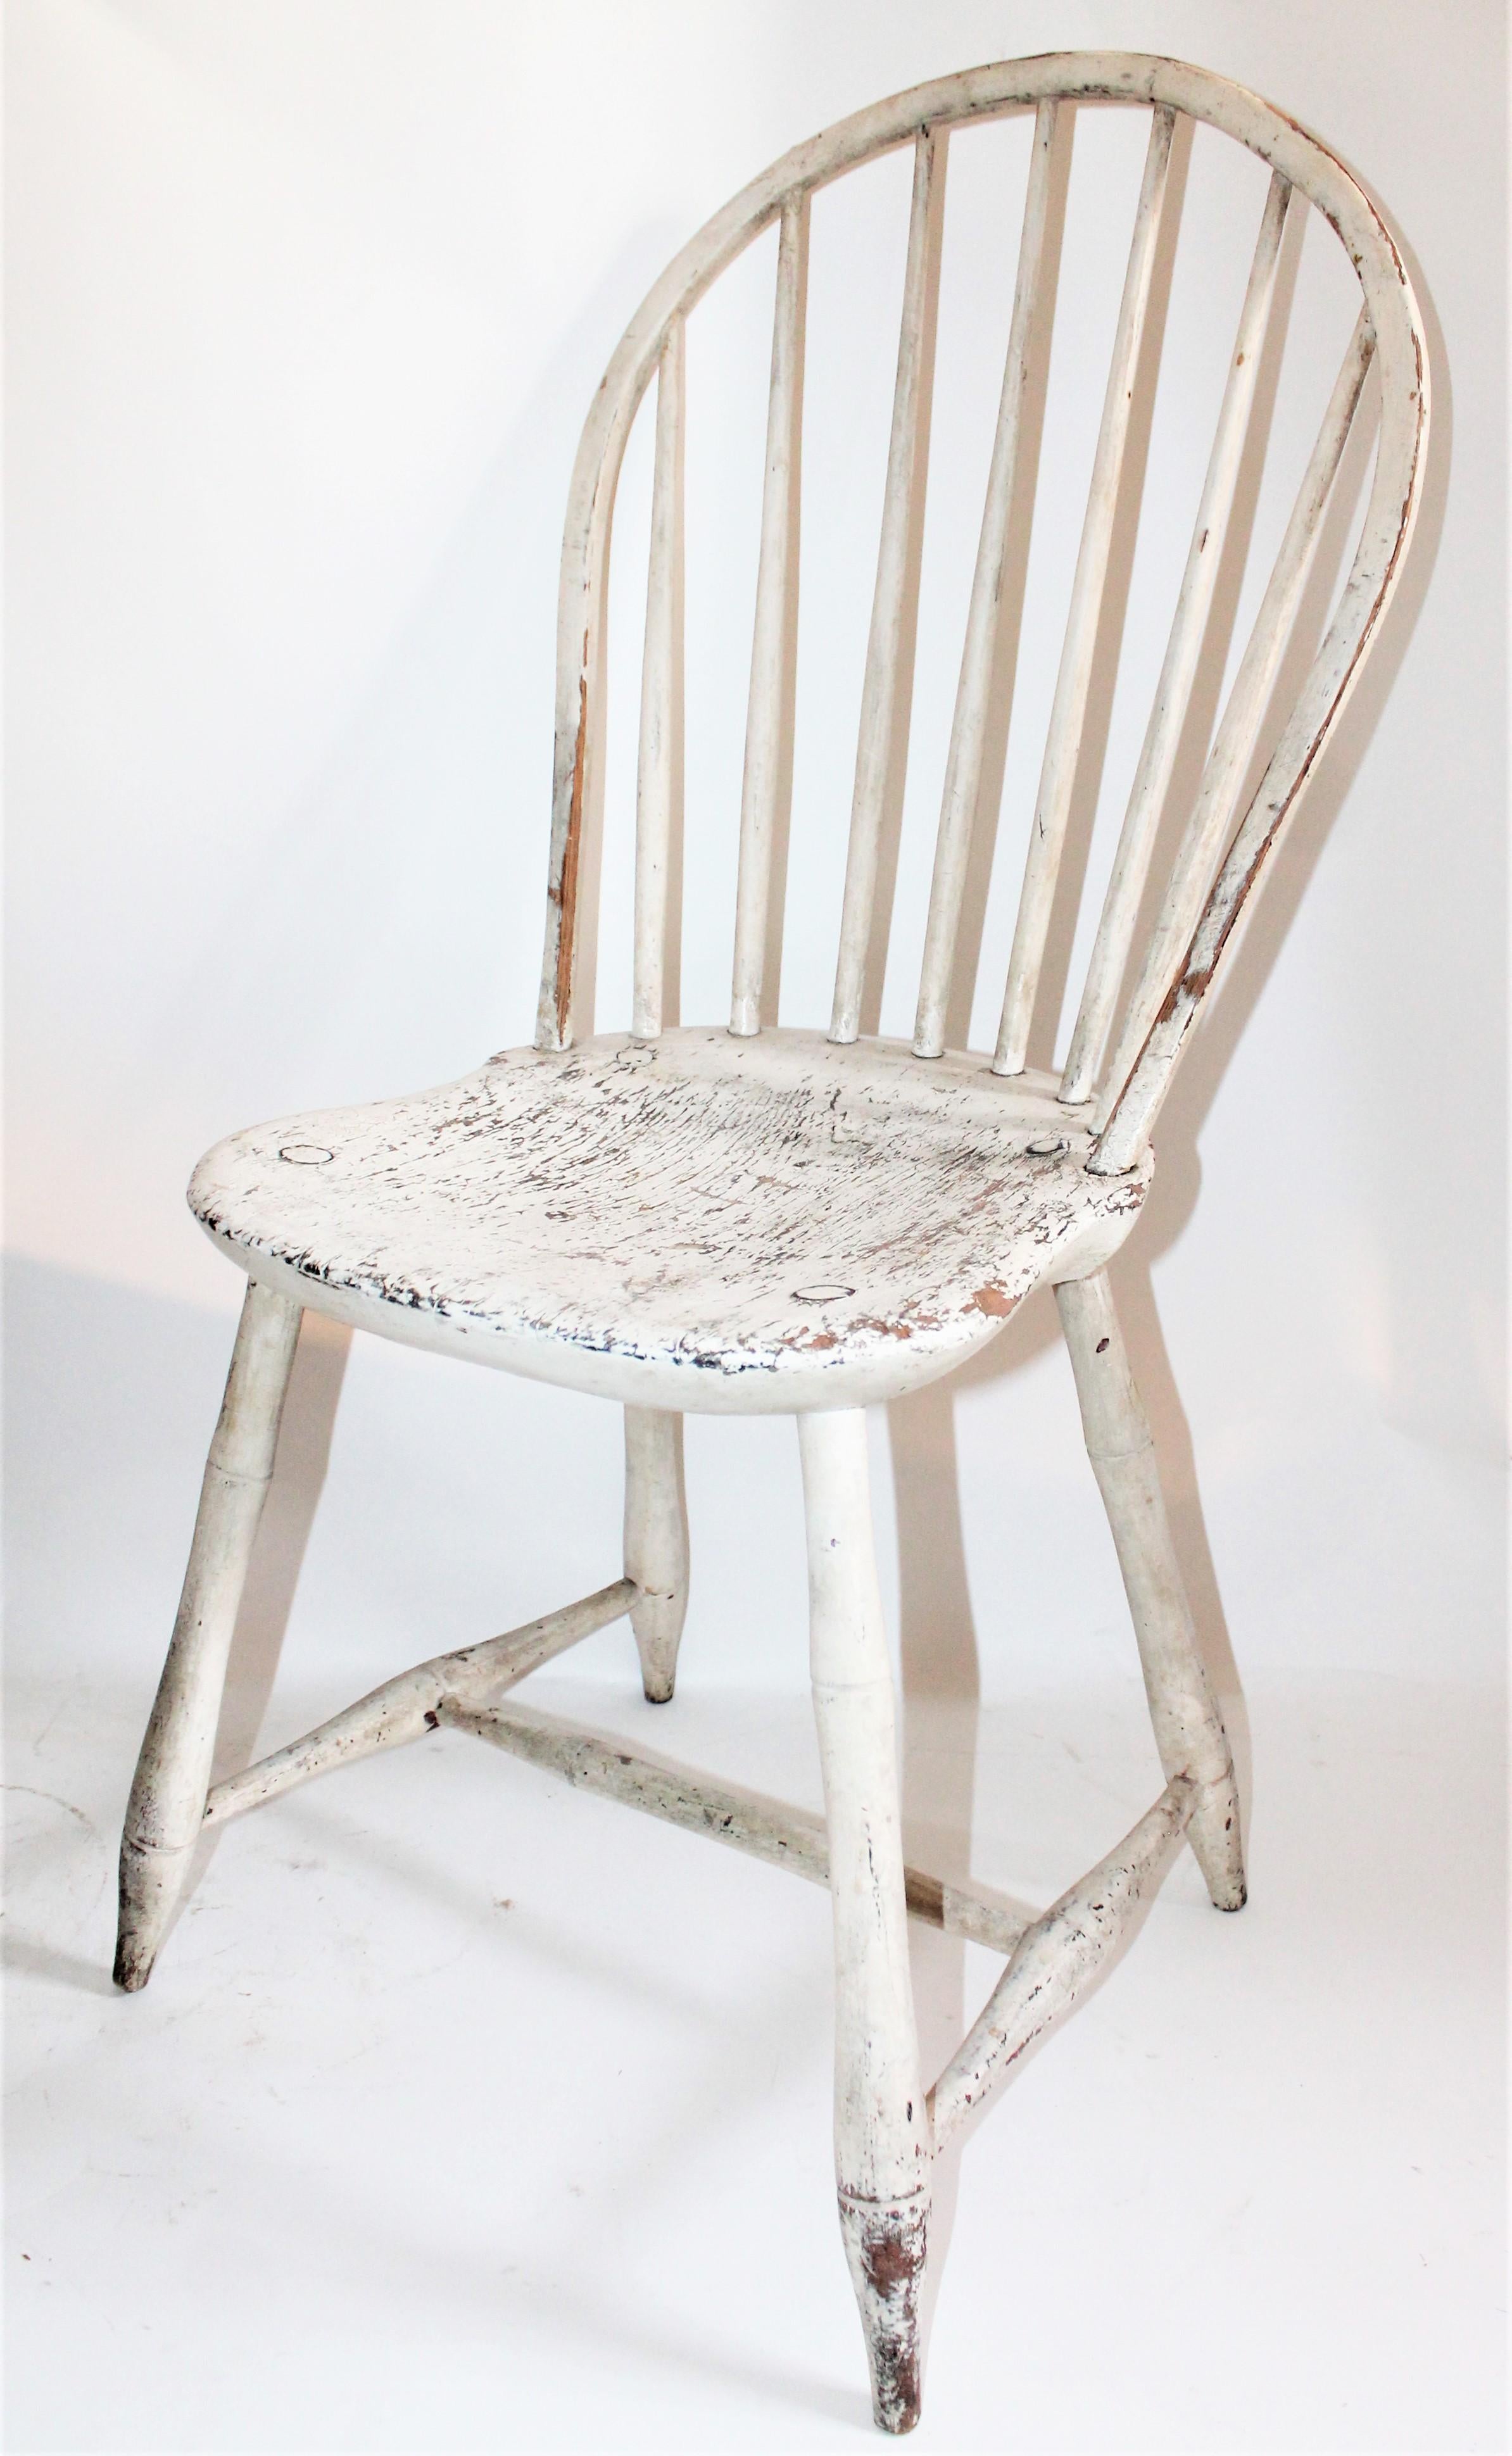 Cette belle chaise Windsor originale peinte à dossier ballon est en excellent état de surface. Cette chaise a été trouvée en Pennsylvanie, mais elle est originaire ou fabriquée en Nouvelle-Angleterre.